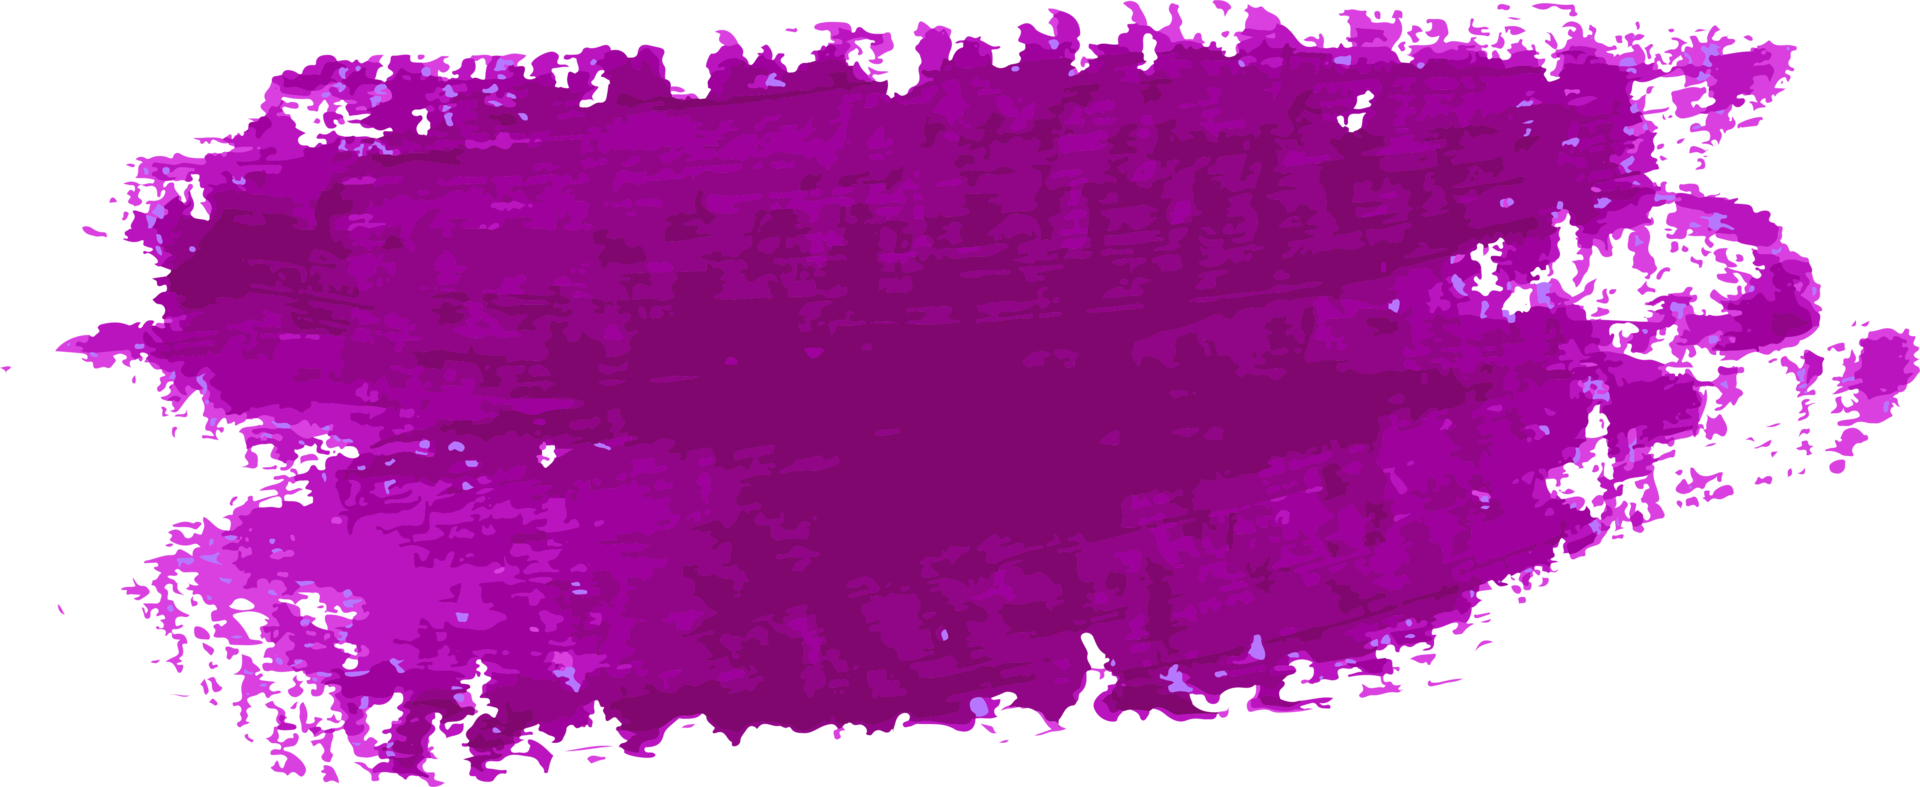 coup de pinceau aquarelle violet png